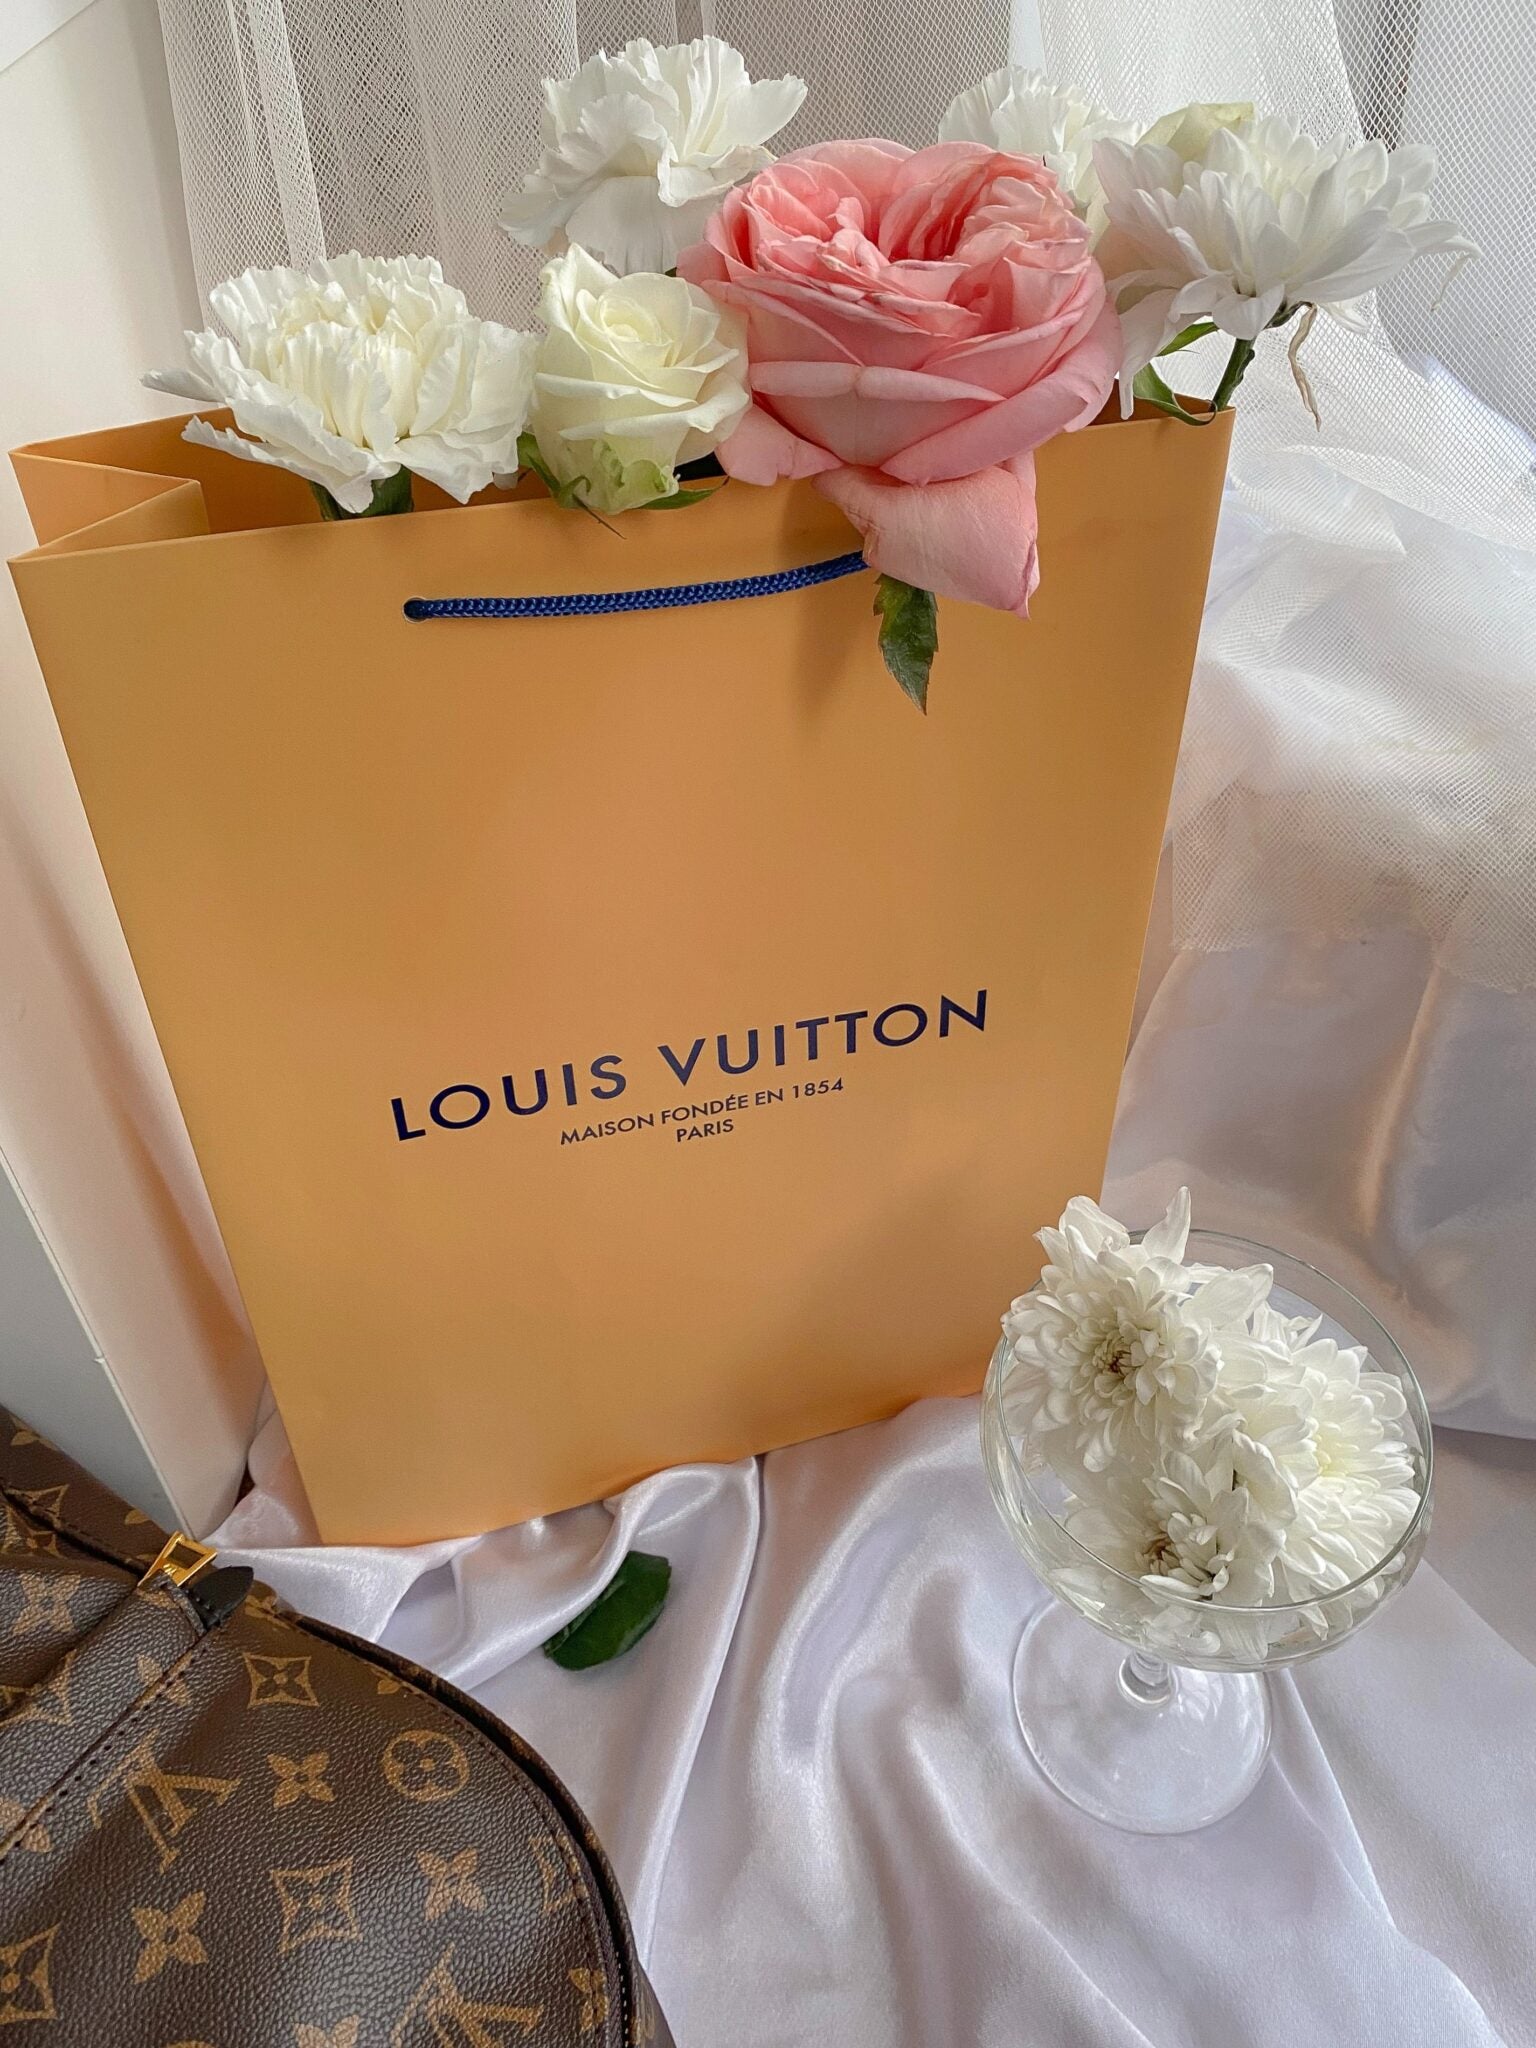 Rent a Louis Vuitton bag